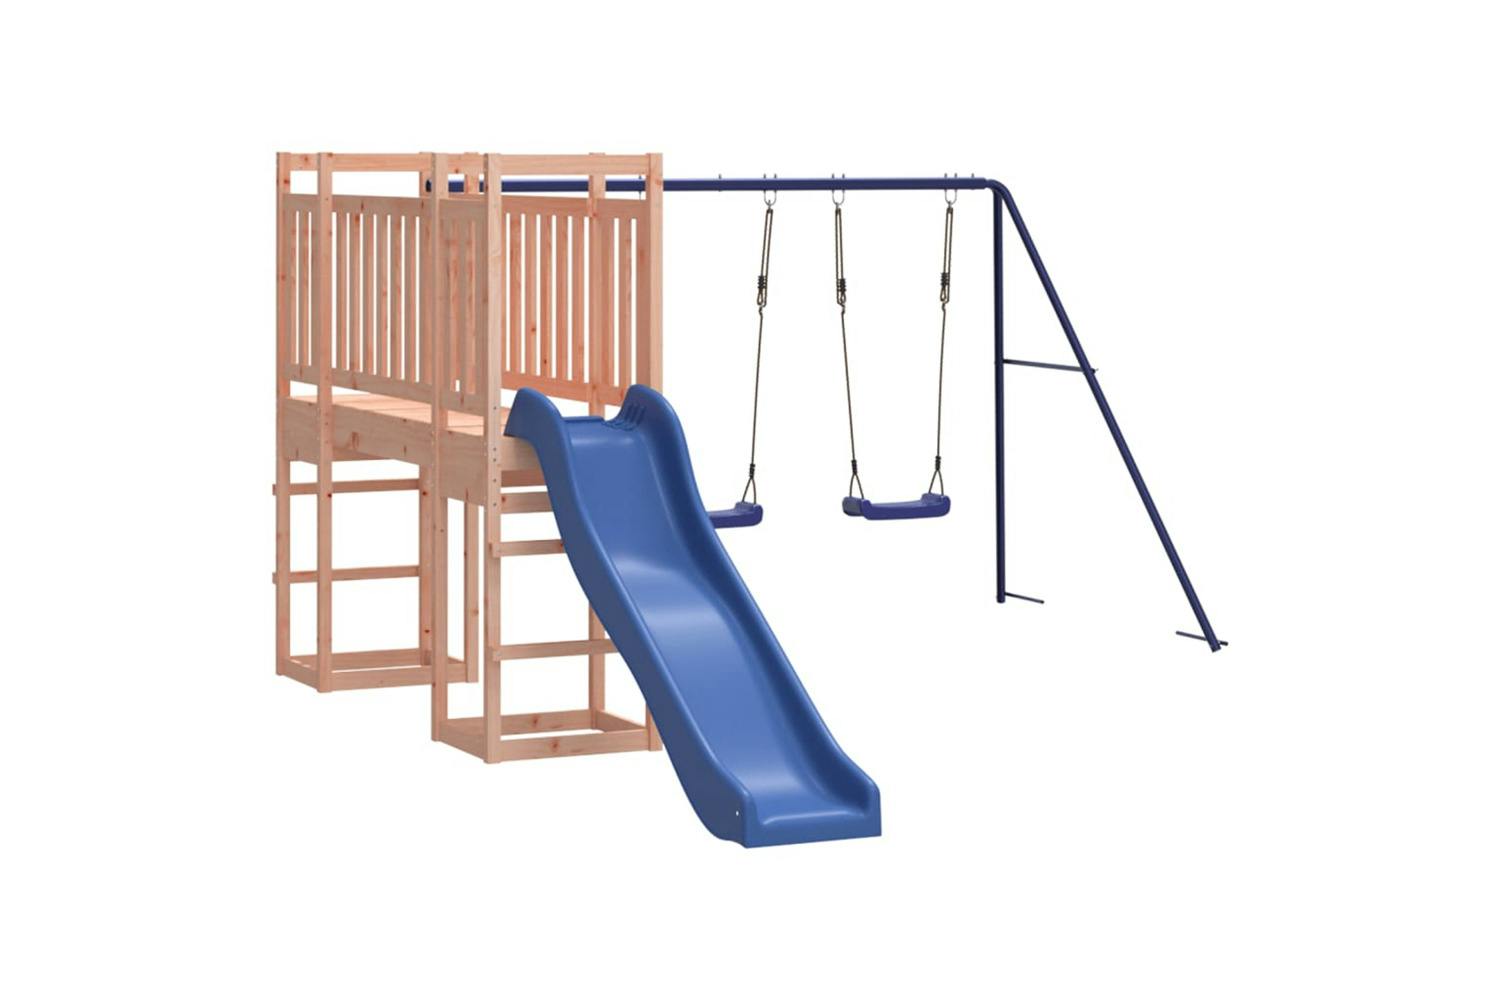 Vidaxl 3155961 Playhouse With Slide Swings Solid Wood Douglas